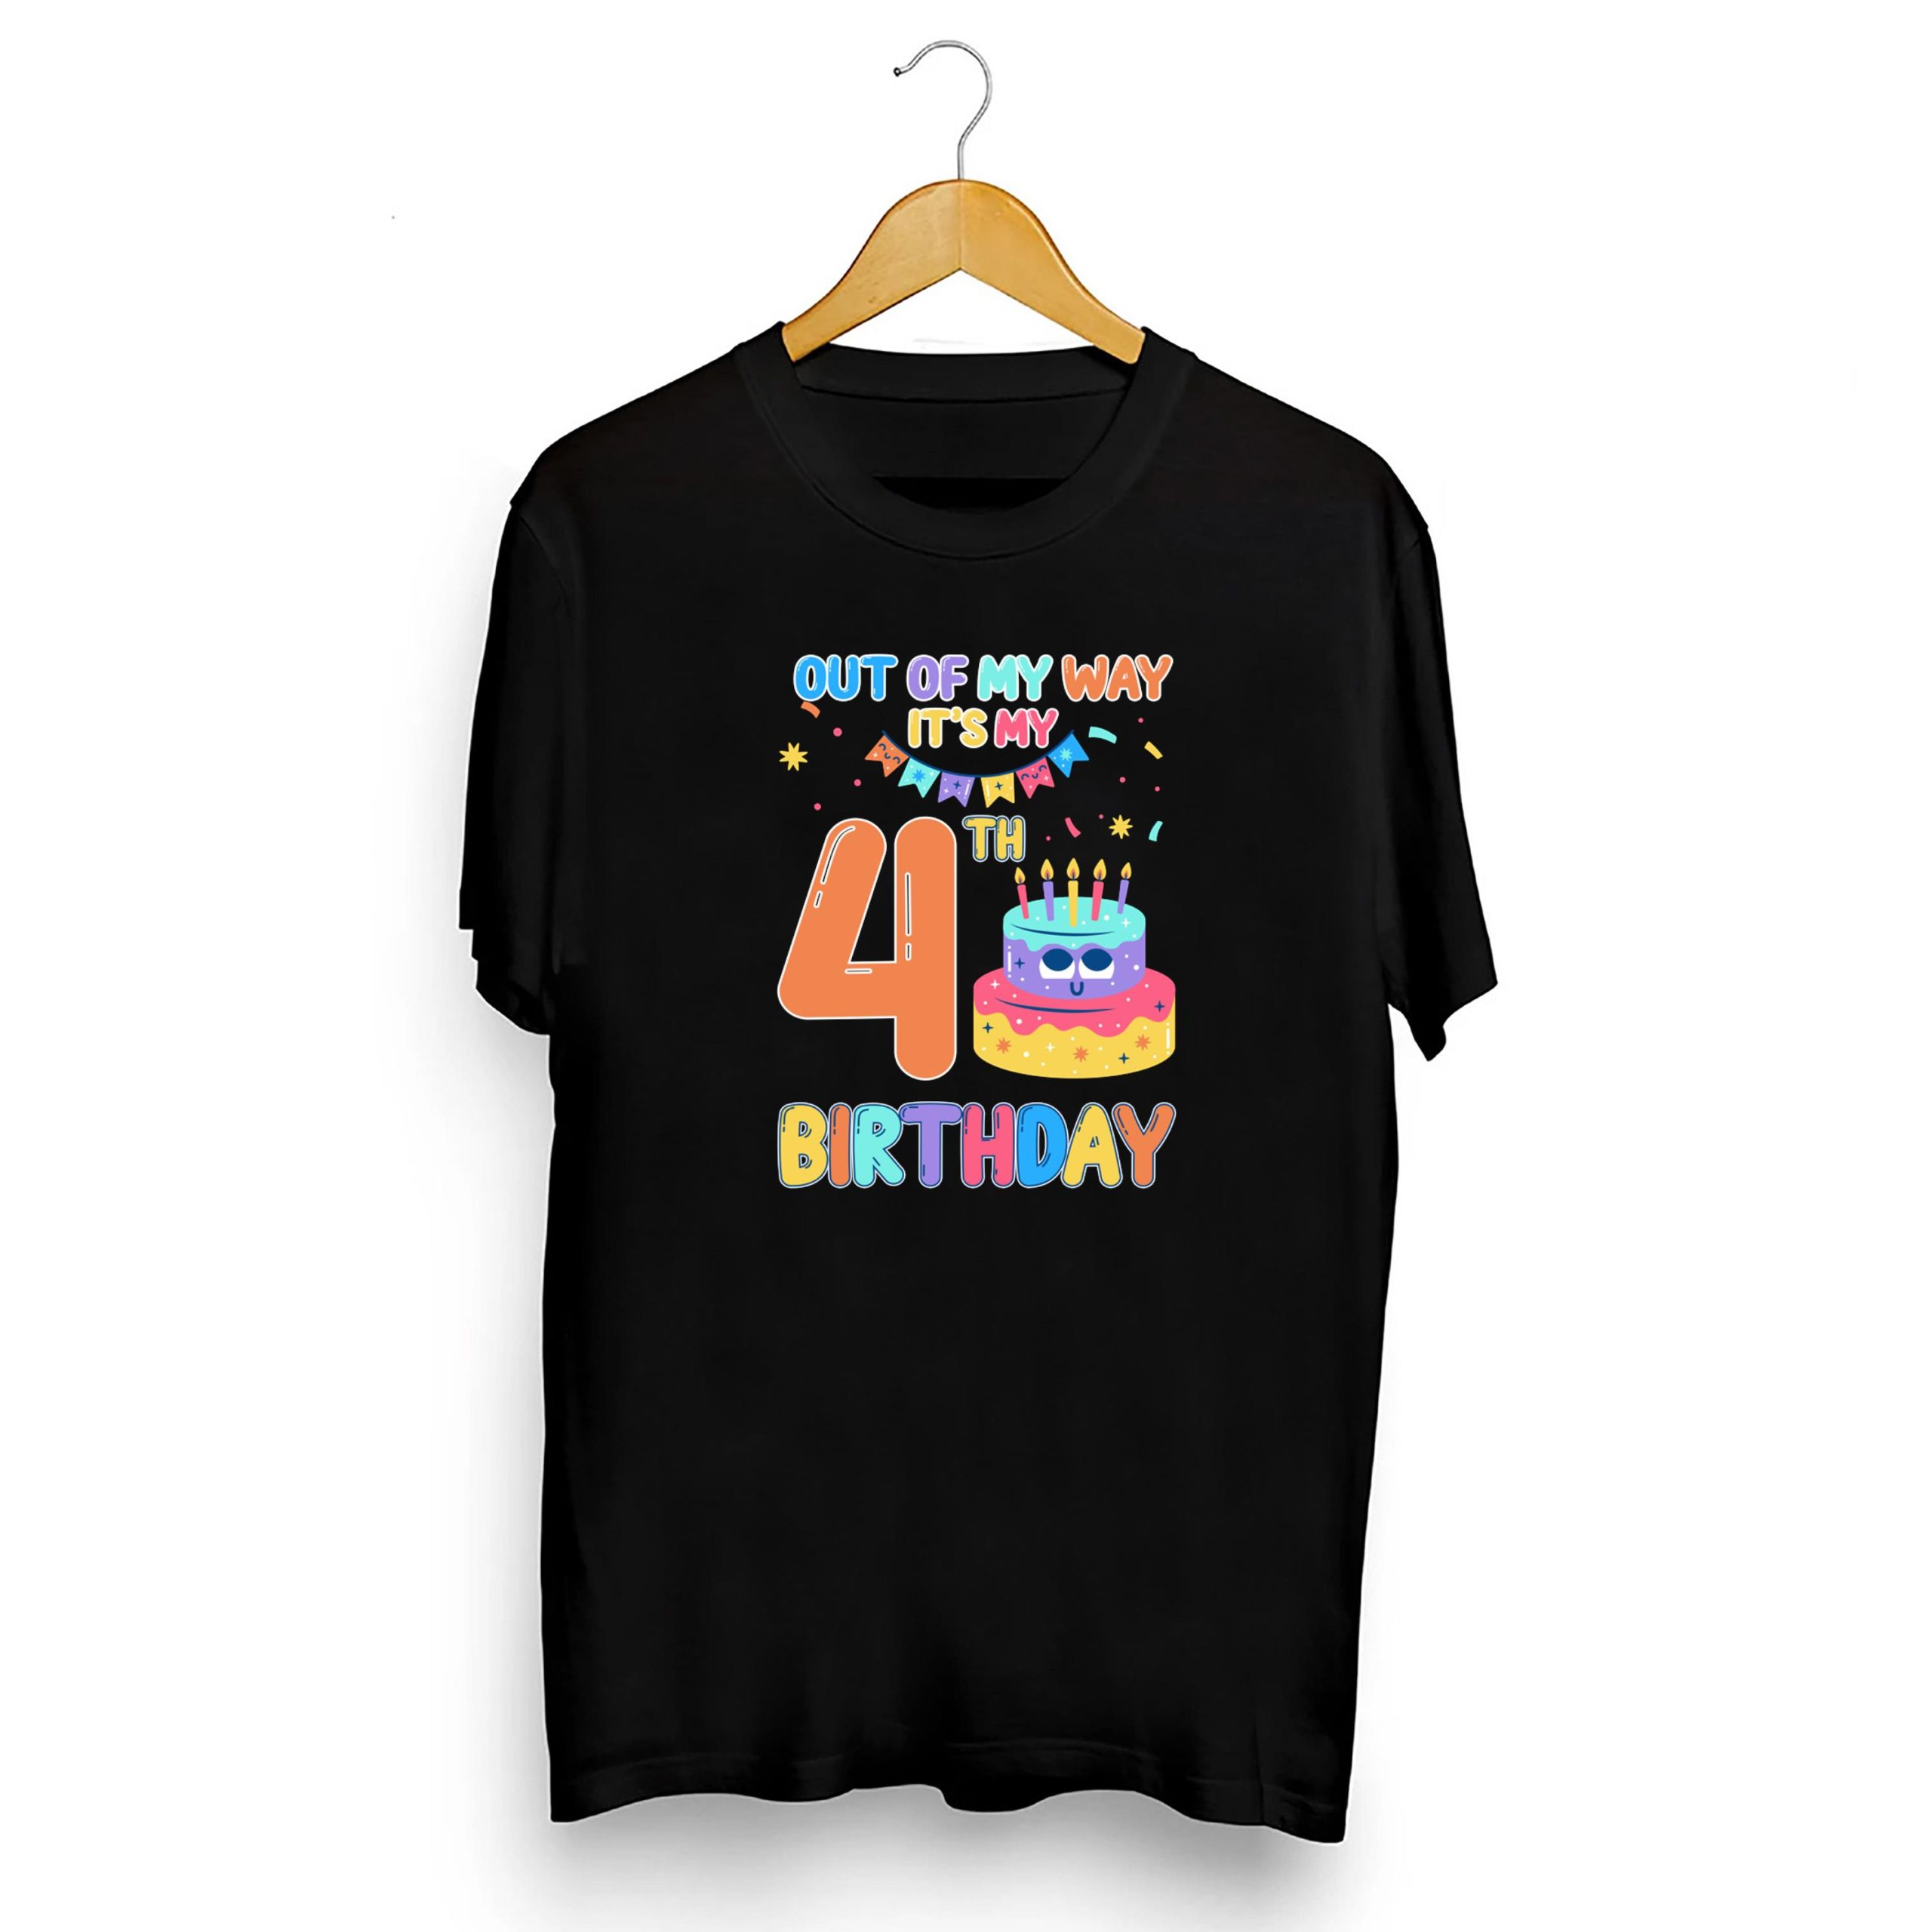 Train Theme Birthday Matching Family Birthday Shirt